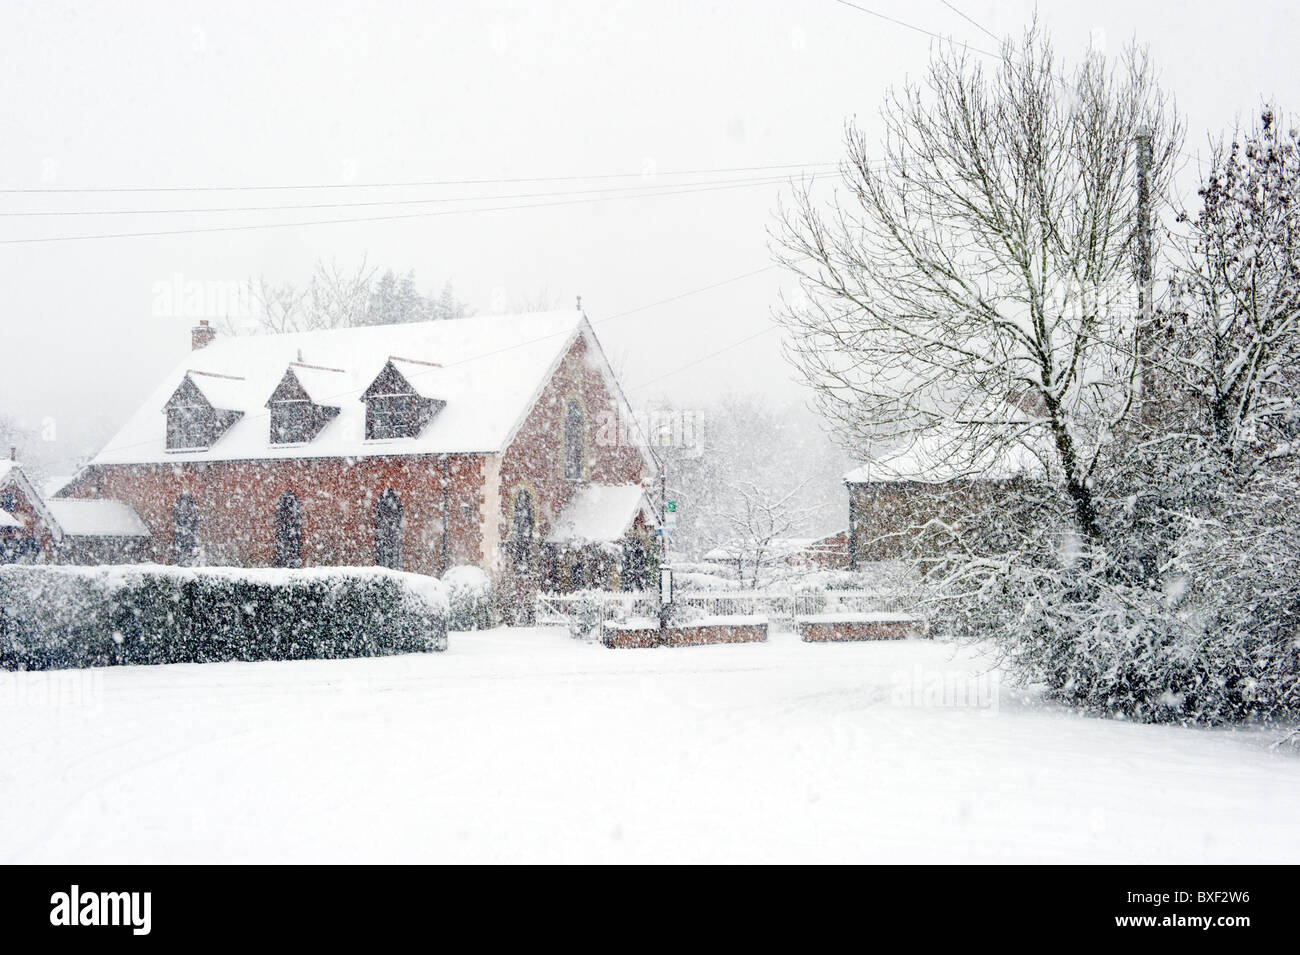 Ein Haus verdeckt durch Schneefall und Blizzard Wetterbedingungen Stockfoto